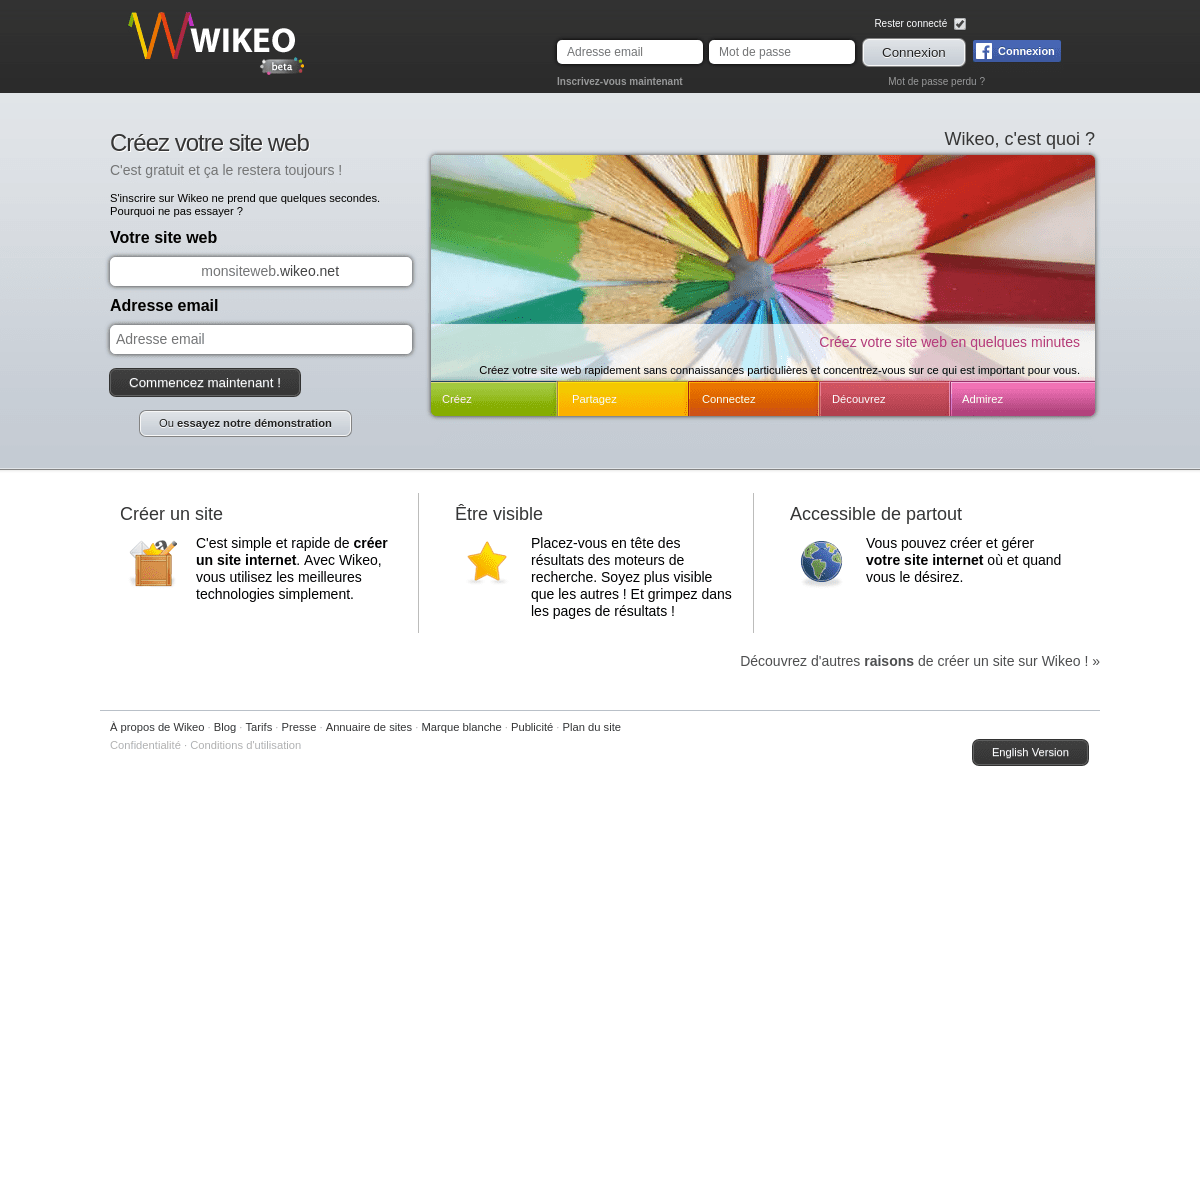 Créer un site web, c'est facile et gratuit avec Wikeo.